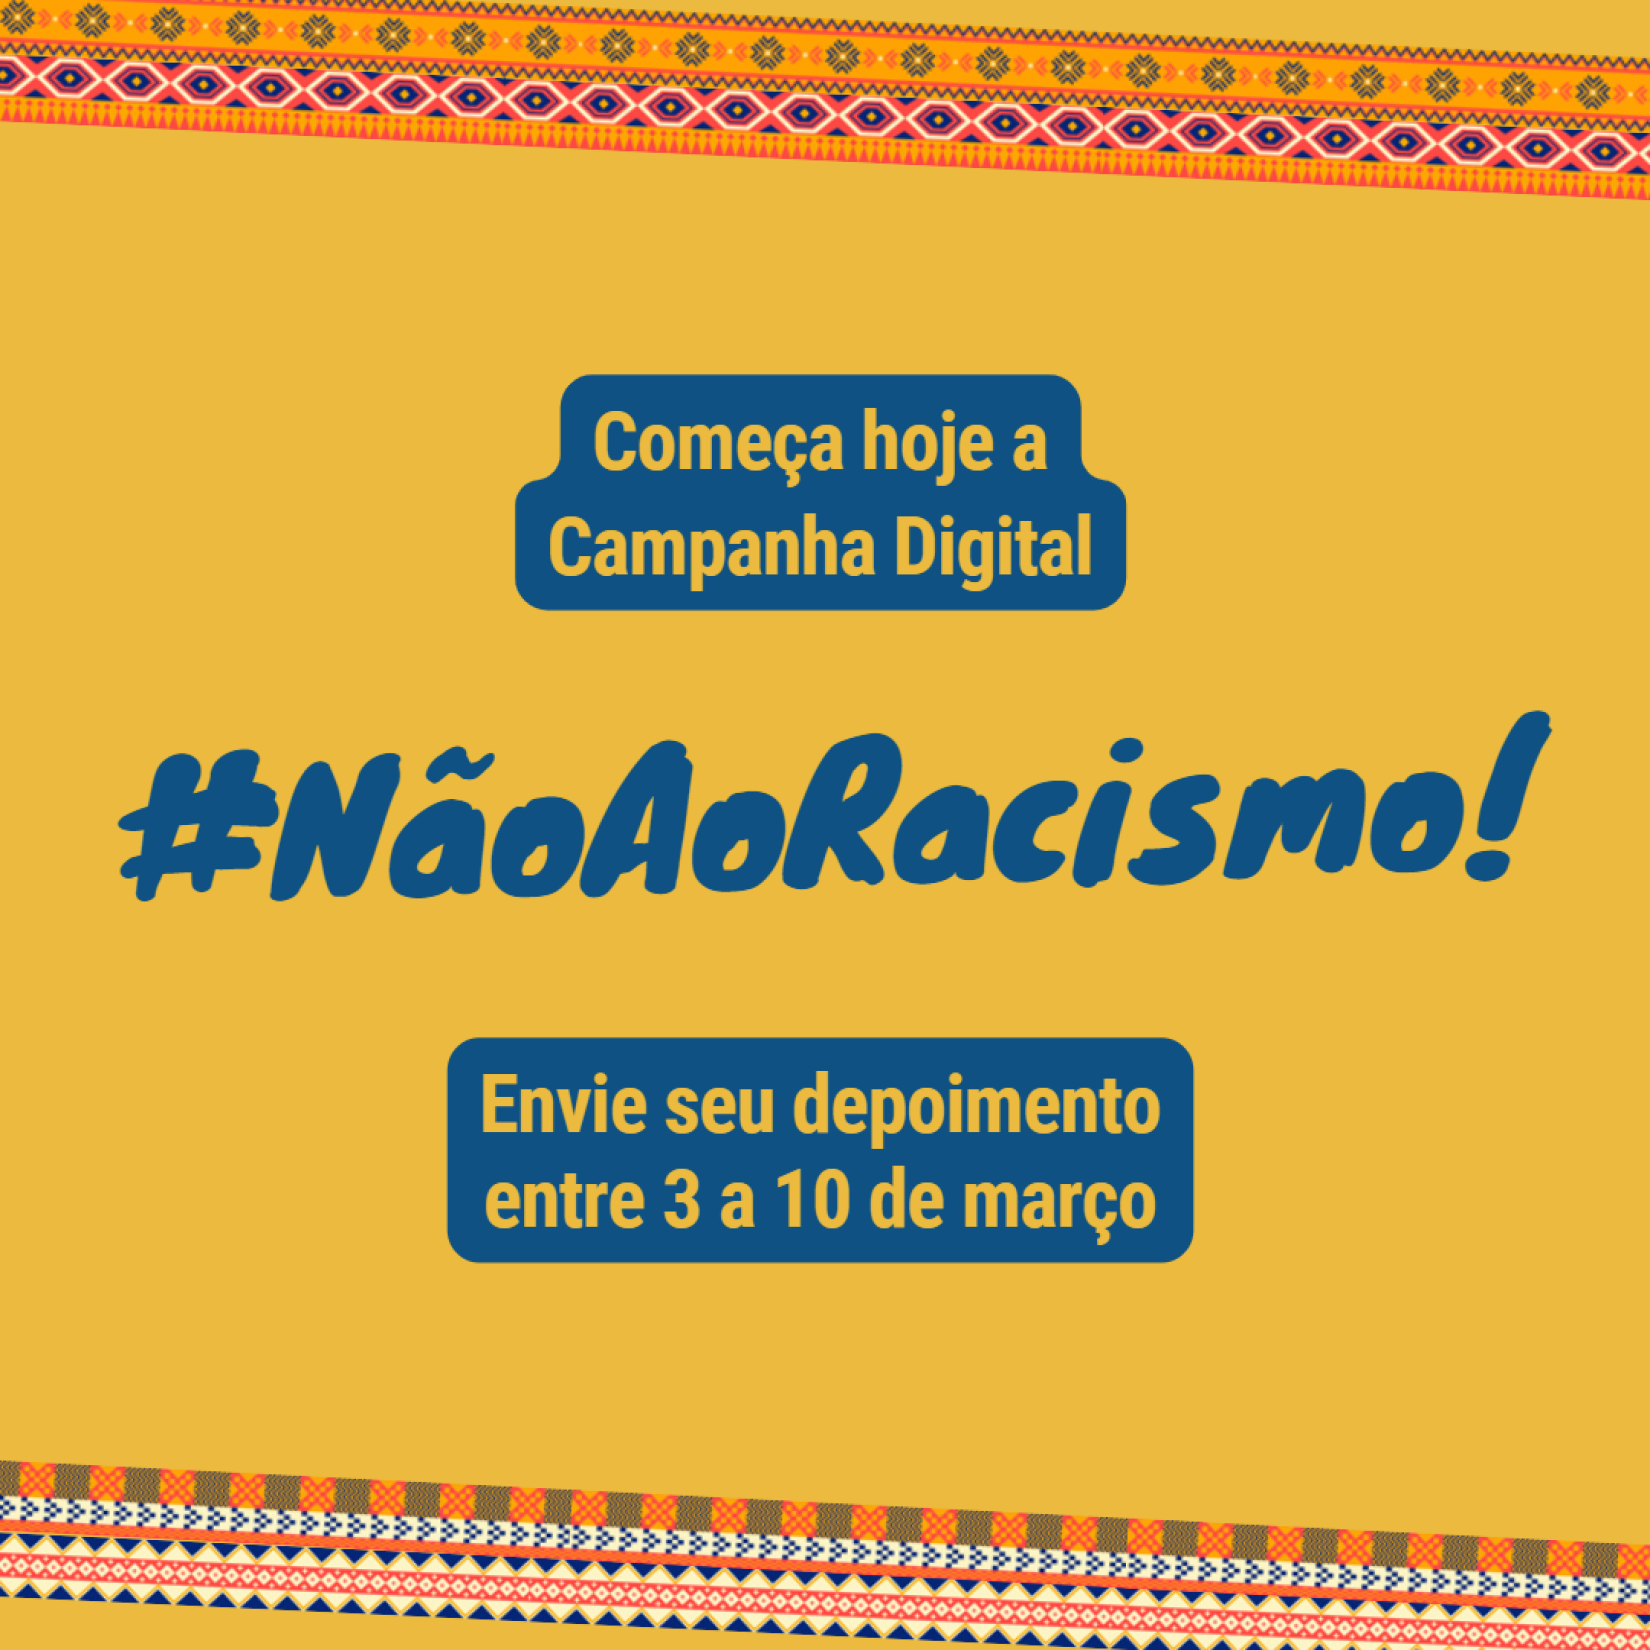 Card da campanha digital #NãoAoRacismo, que reunirá histórias de quem sofreu ou enfrentou a discriminação racial